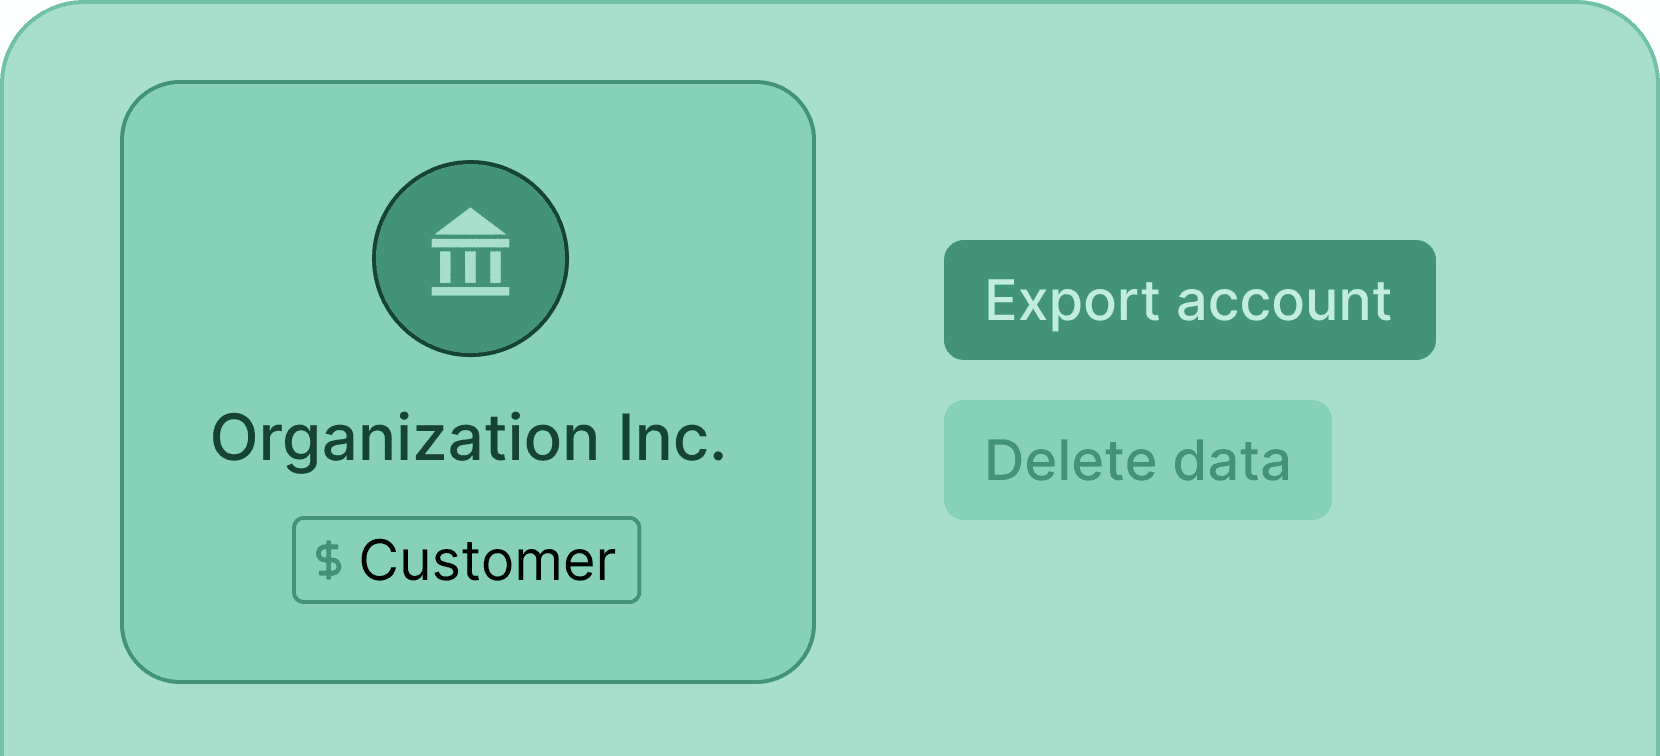 certifier-features-export-account-data